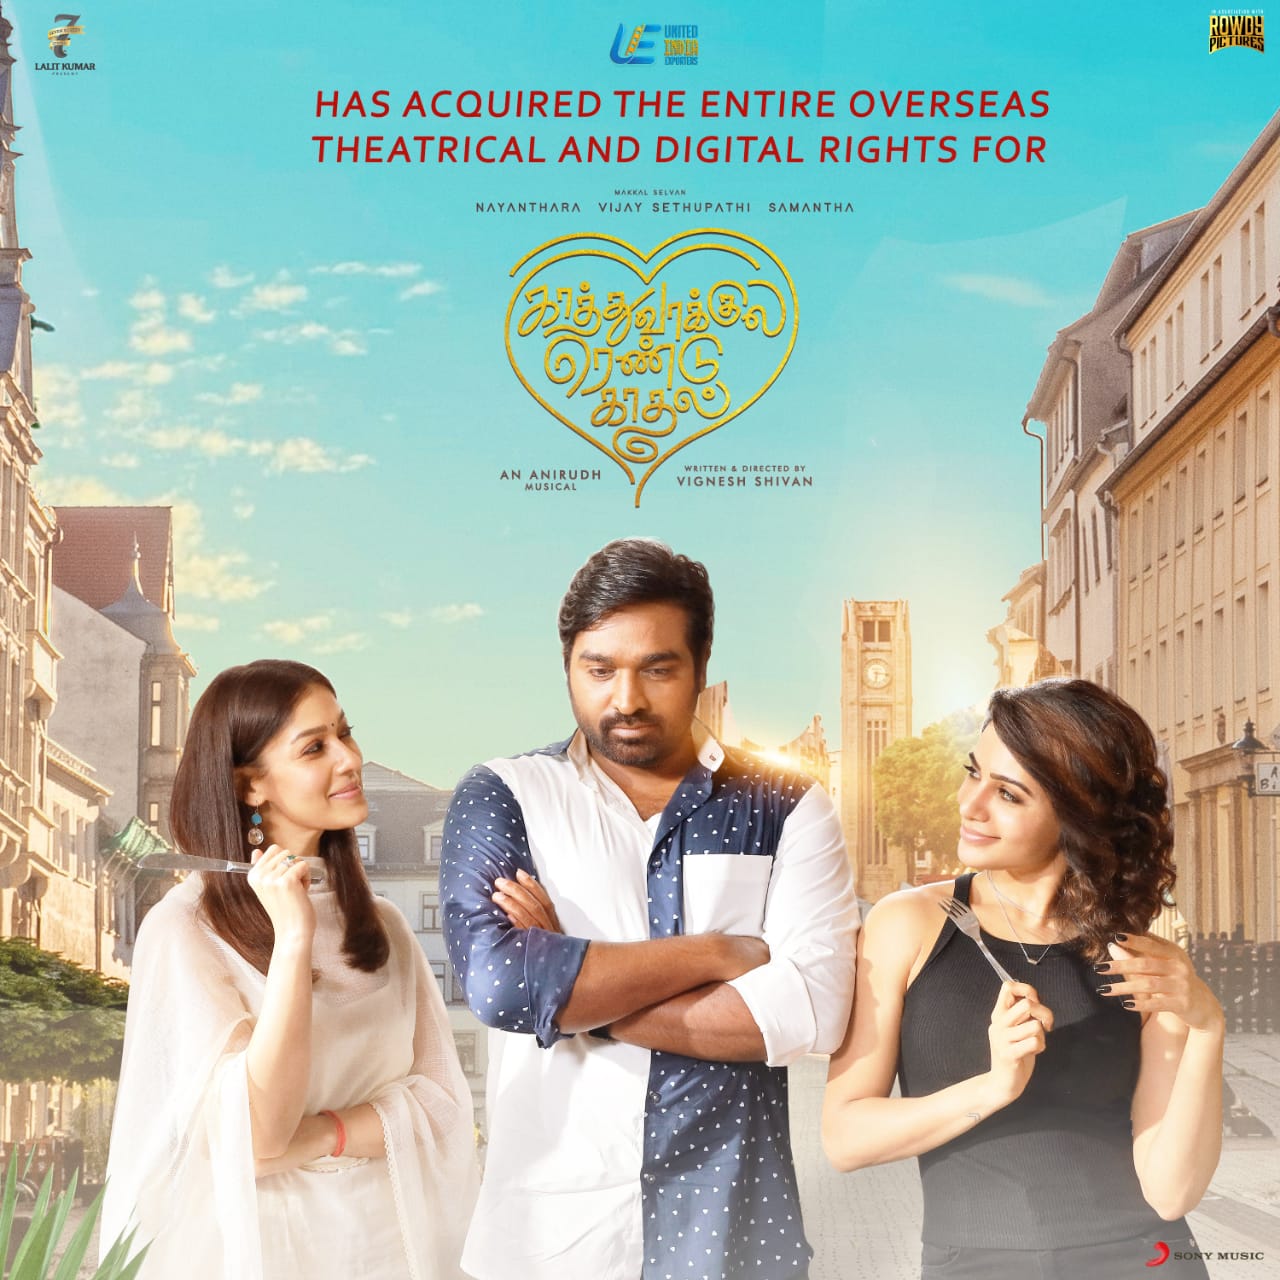 Kaathu Vaakula Rendu Kaadhal Movie Overseas Digital Theatre Rights Bagged by UIE